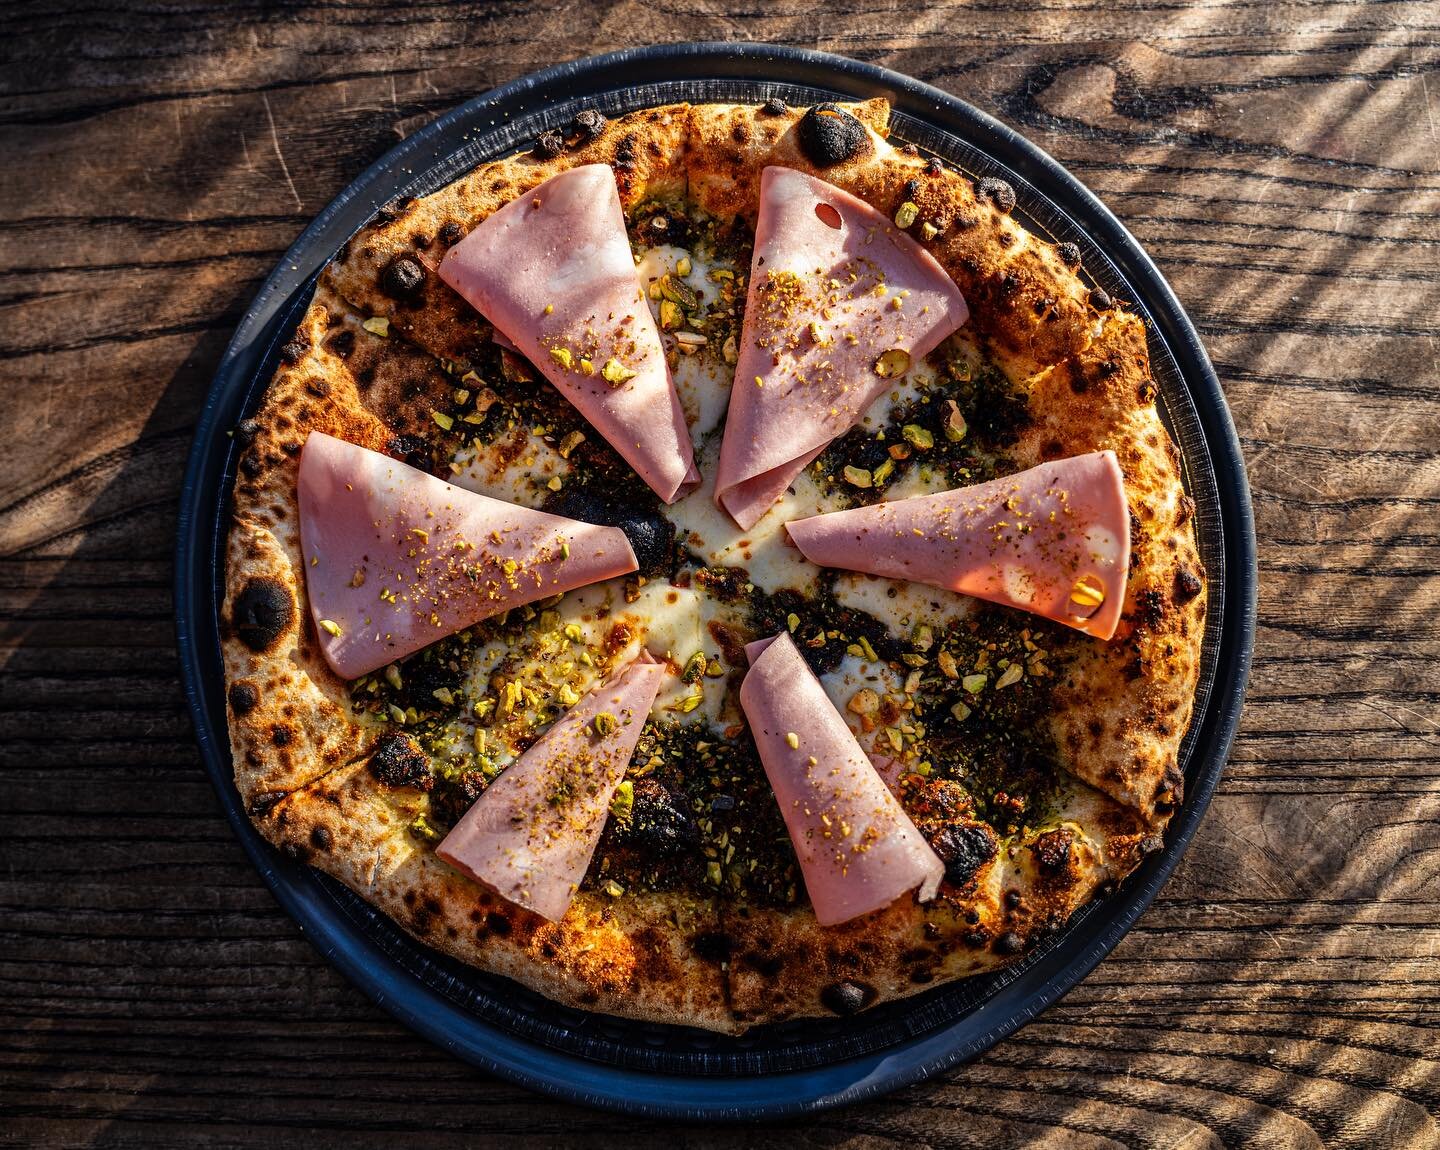 New pizza alert ‼️ The Nutty Professor. Pistachio pesto, smoked mozzarella, mortadella + more pistachios. #sparkpizzaredmond #nutlovers #pizzalover